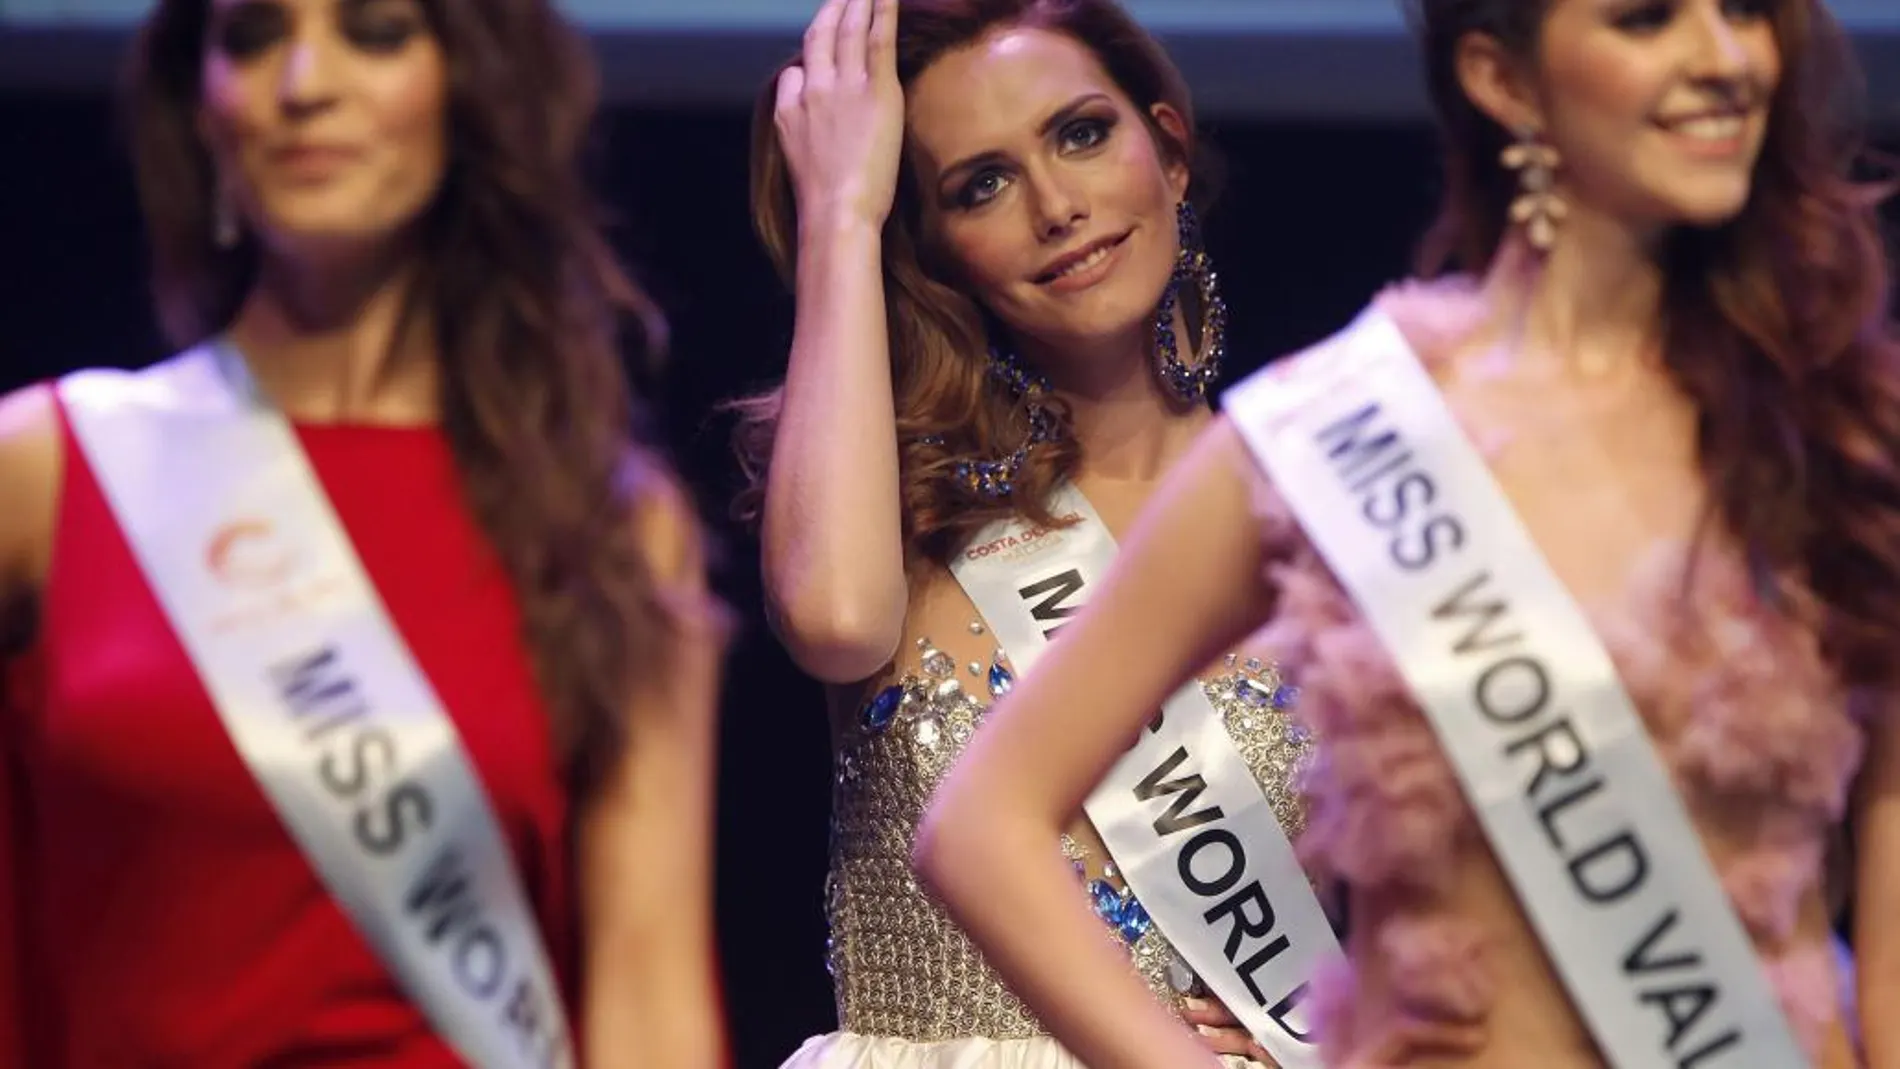 Ángela Ponce (c), actual Miss Cádiz, y primera miss transexual en España, posa entre sus compañeras durante la celebración del certamen